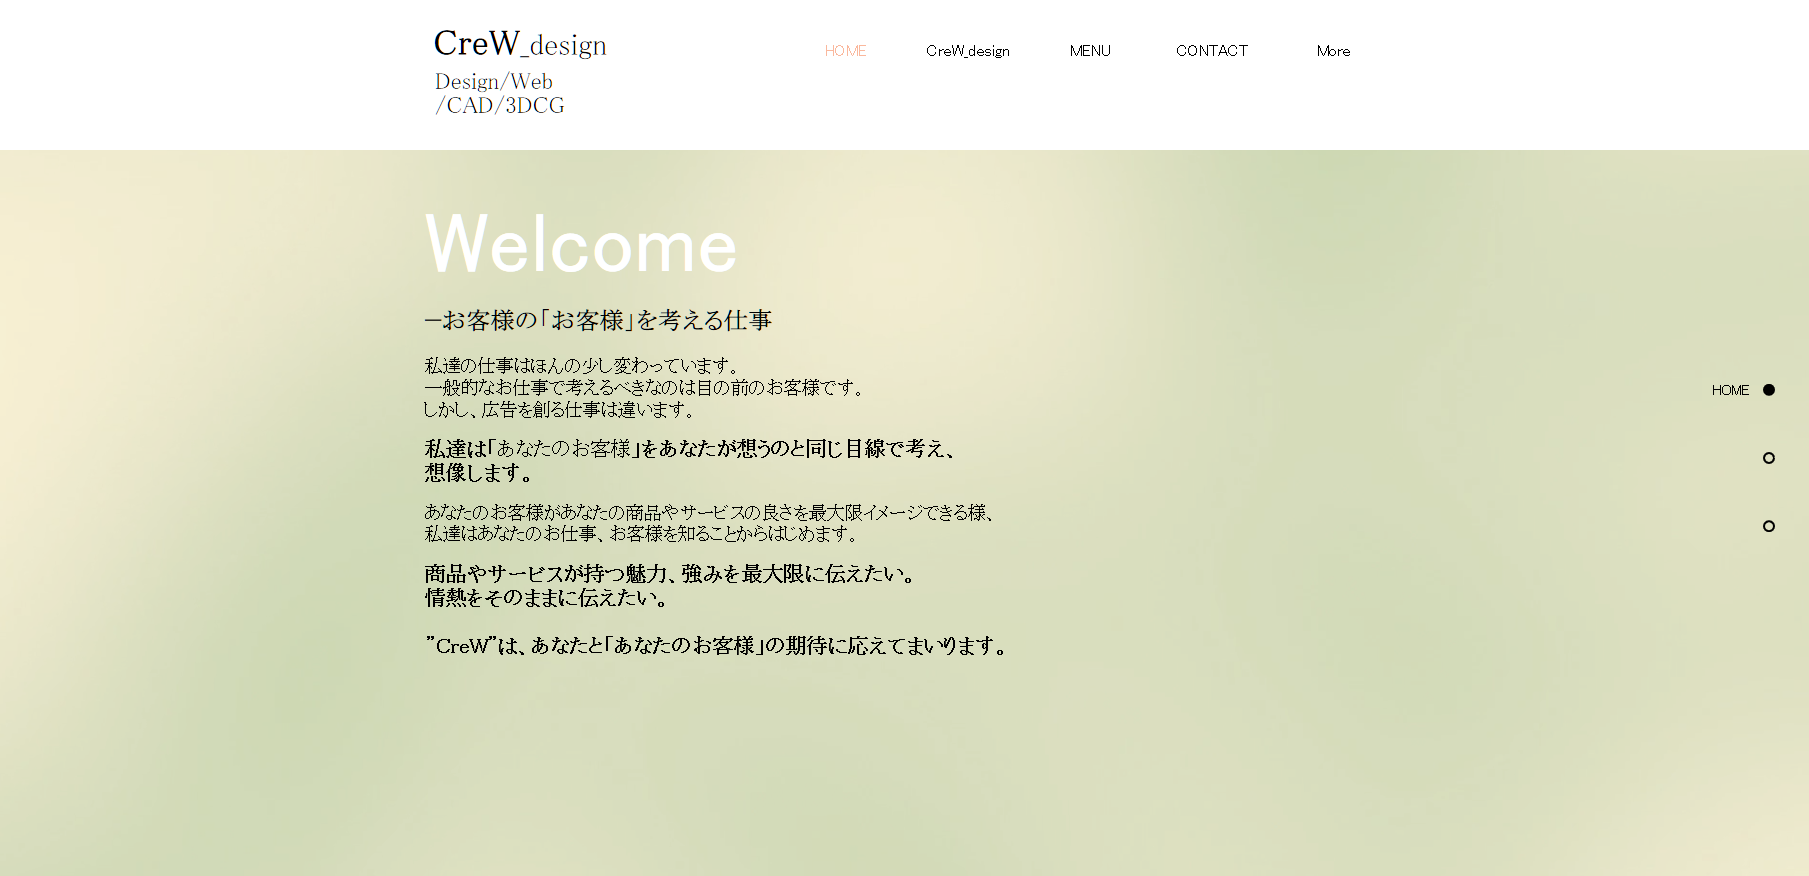 CreW_designのCreW_designサービス